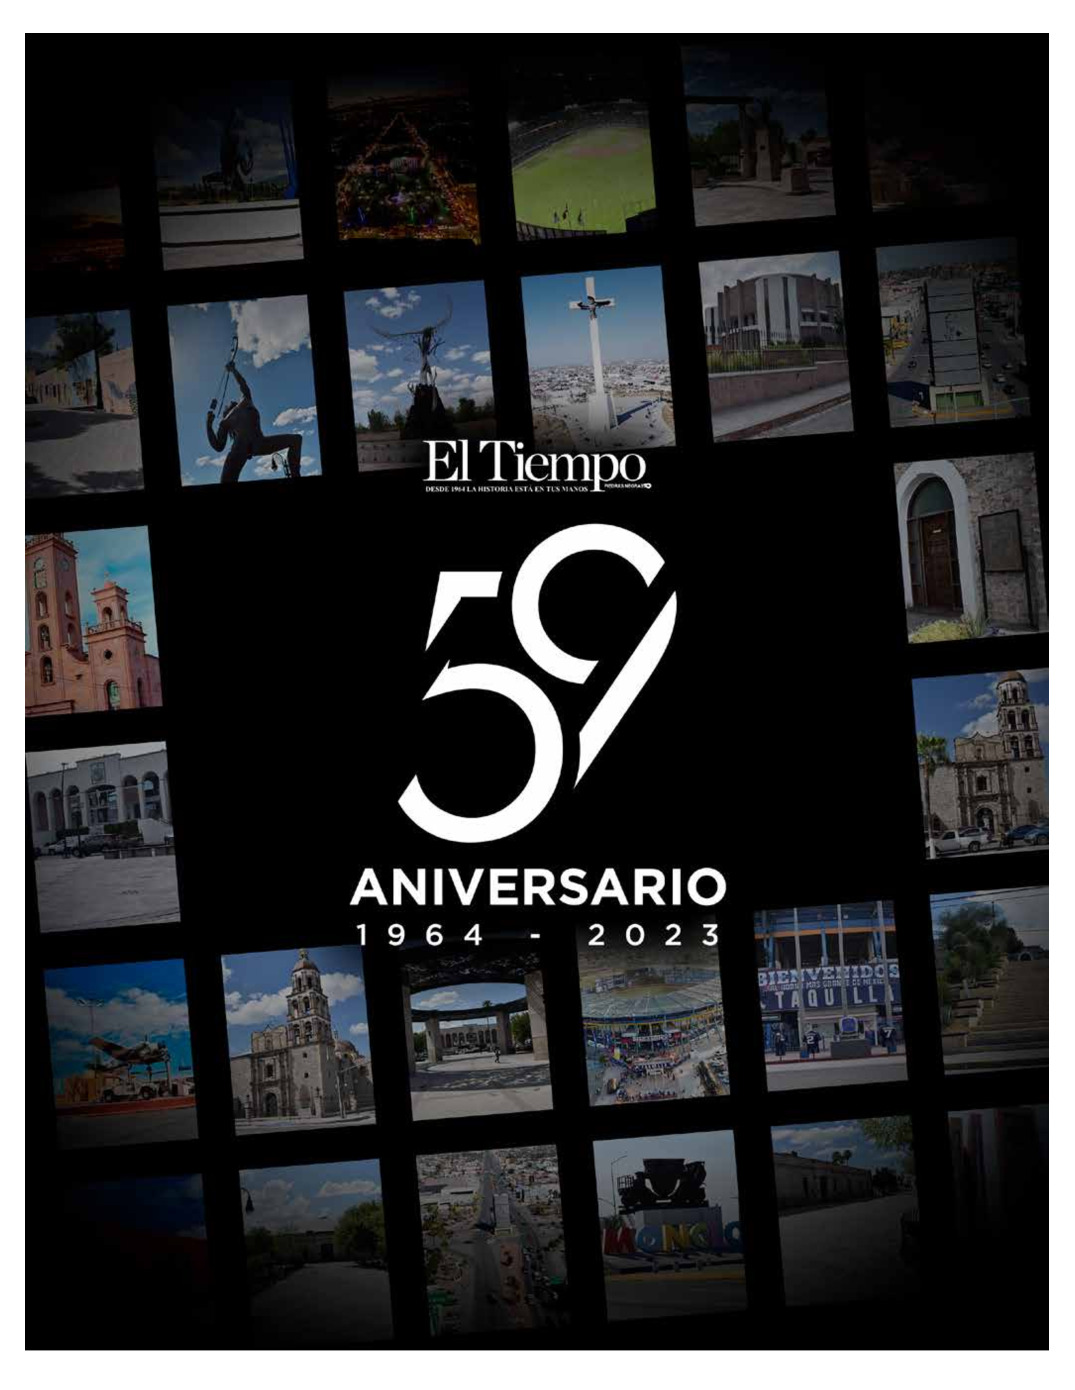 Aniversario 59 de El Tiempo